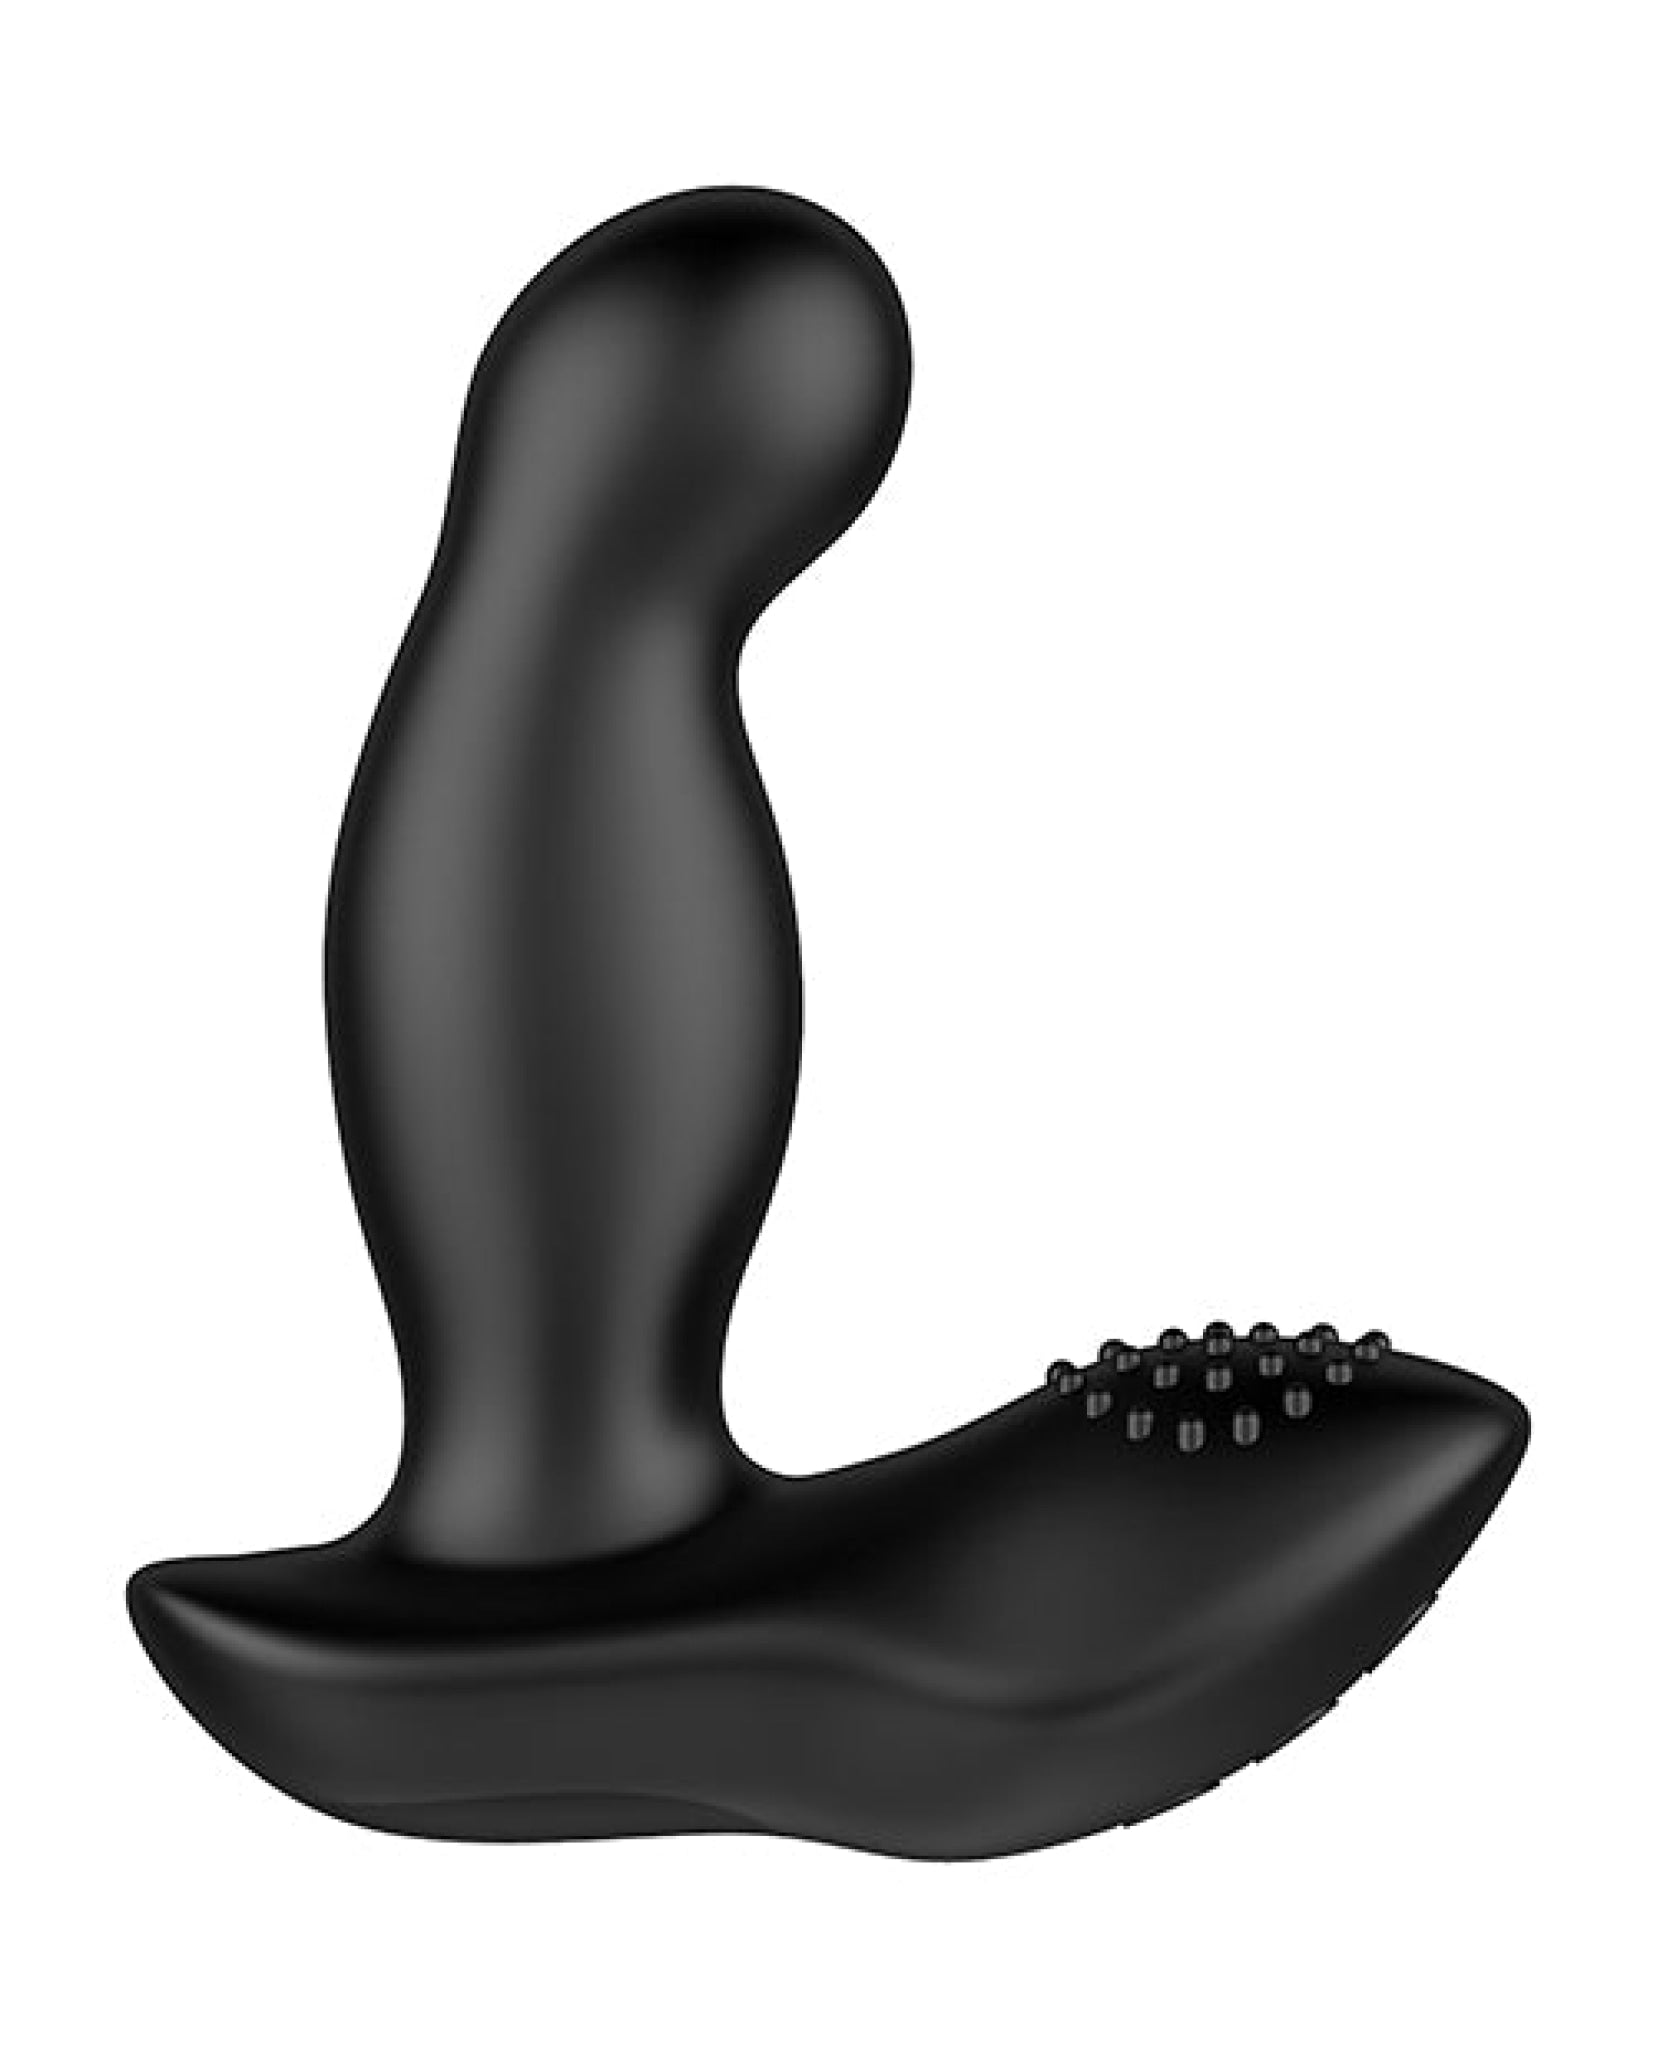 Nexus Boost Prostate Massager W-inflatable Tip - Black Nexus